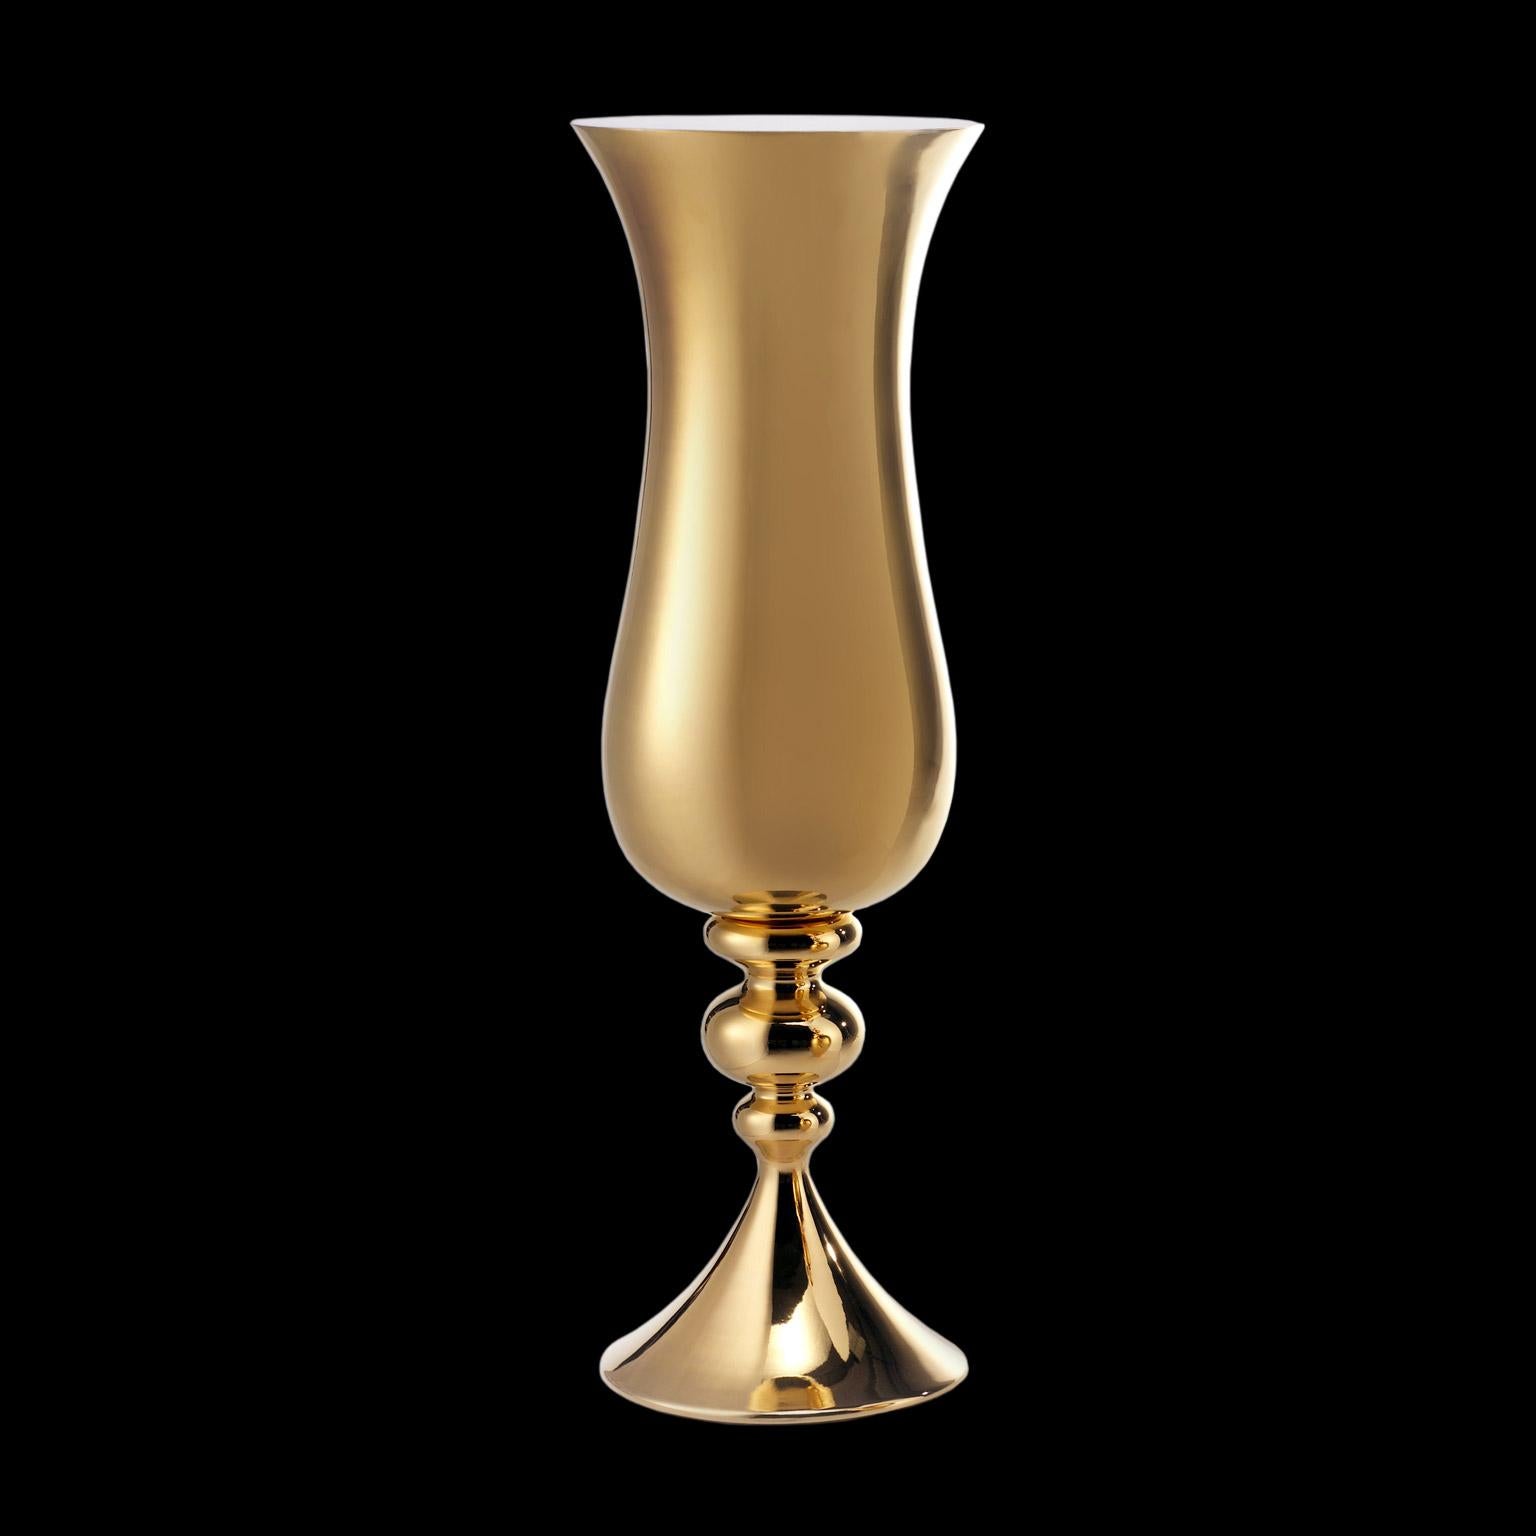 Keramik-Vase LOTH
Kabeljau. CP050 
handgefertigt aus 24-karätigem Gold
und innen weiß matt glasiert  

Maßnahmen: 
H. 140,0 cm.
Dm. 40,0 cm.